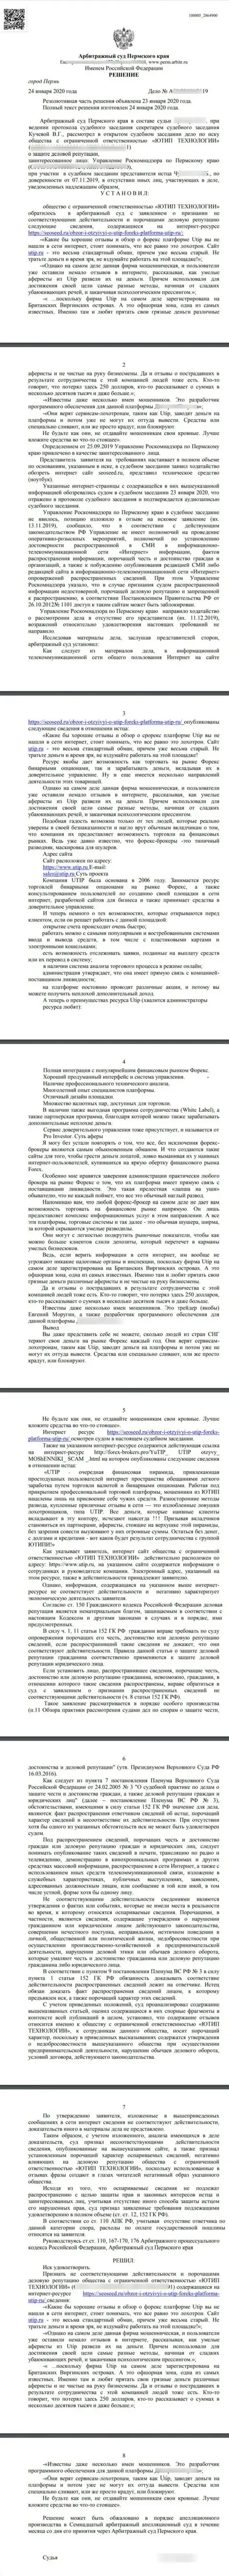 Исковое заявление кидал UTIP Ru в отношении сайта SeoSeed Ru, который был удовлетворен самым гуманным судом